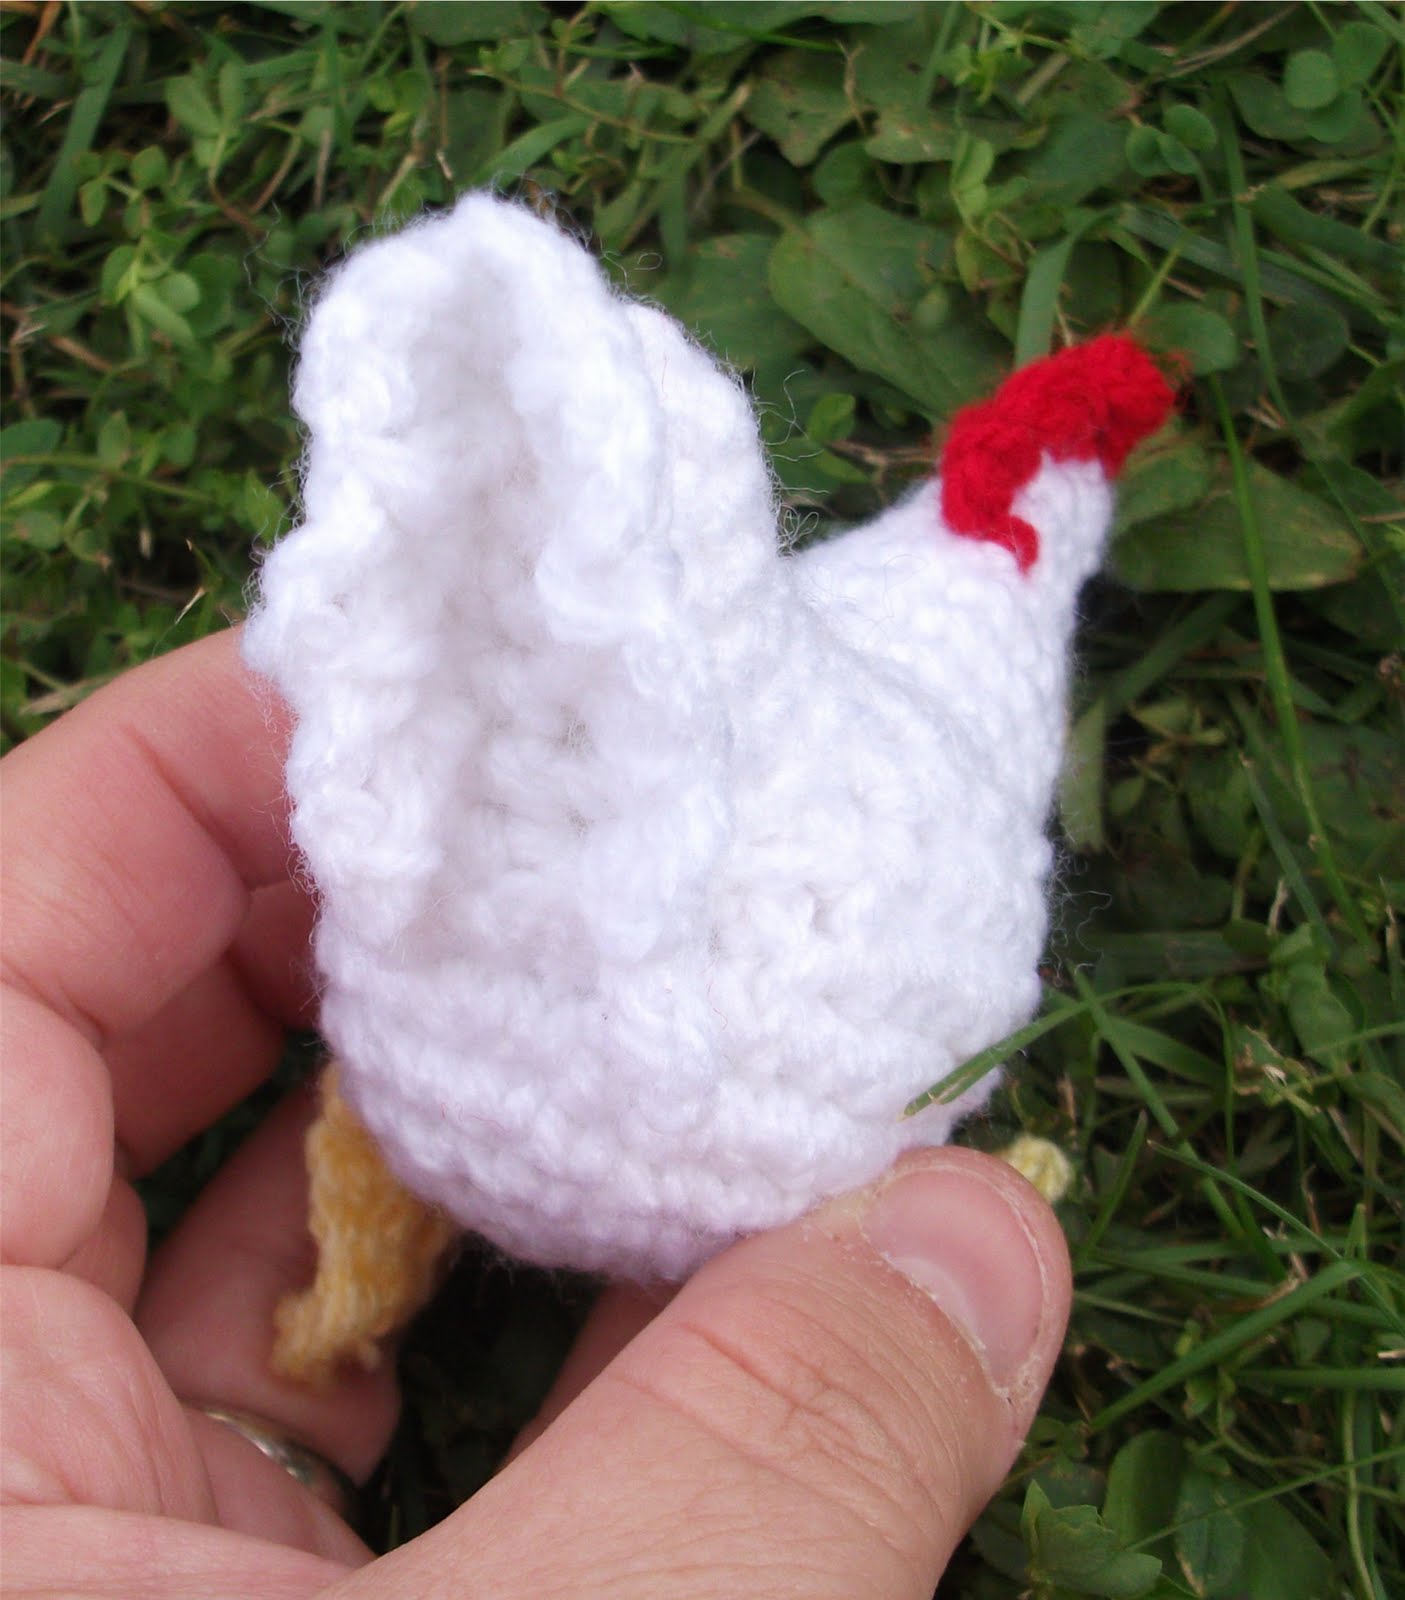 Crochet Pattern Central - Free Bird Cr
ochet Pattern Link Directory